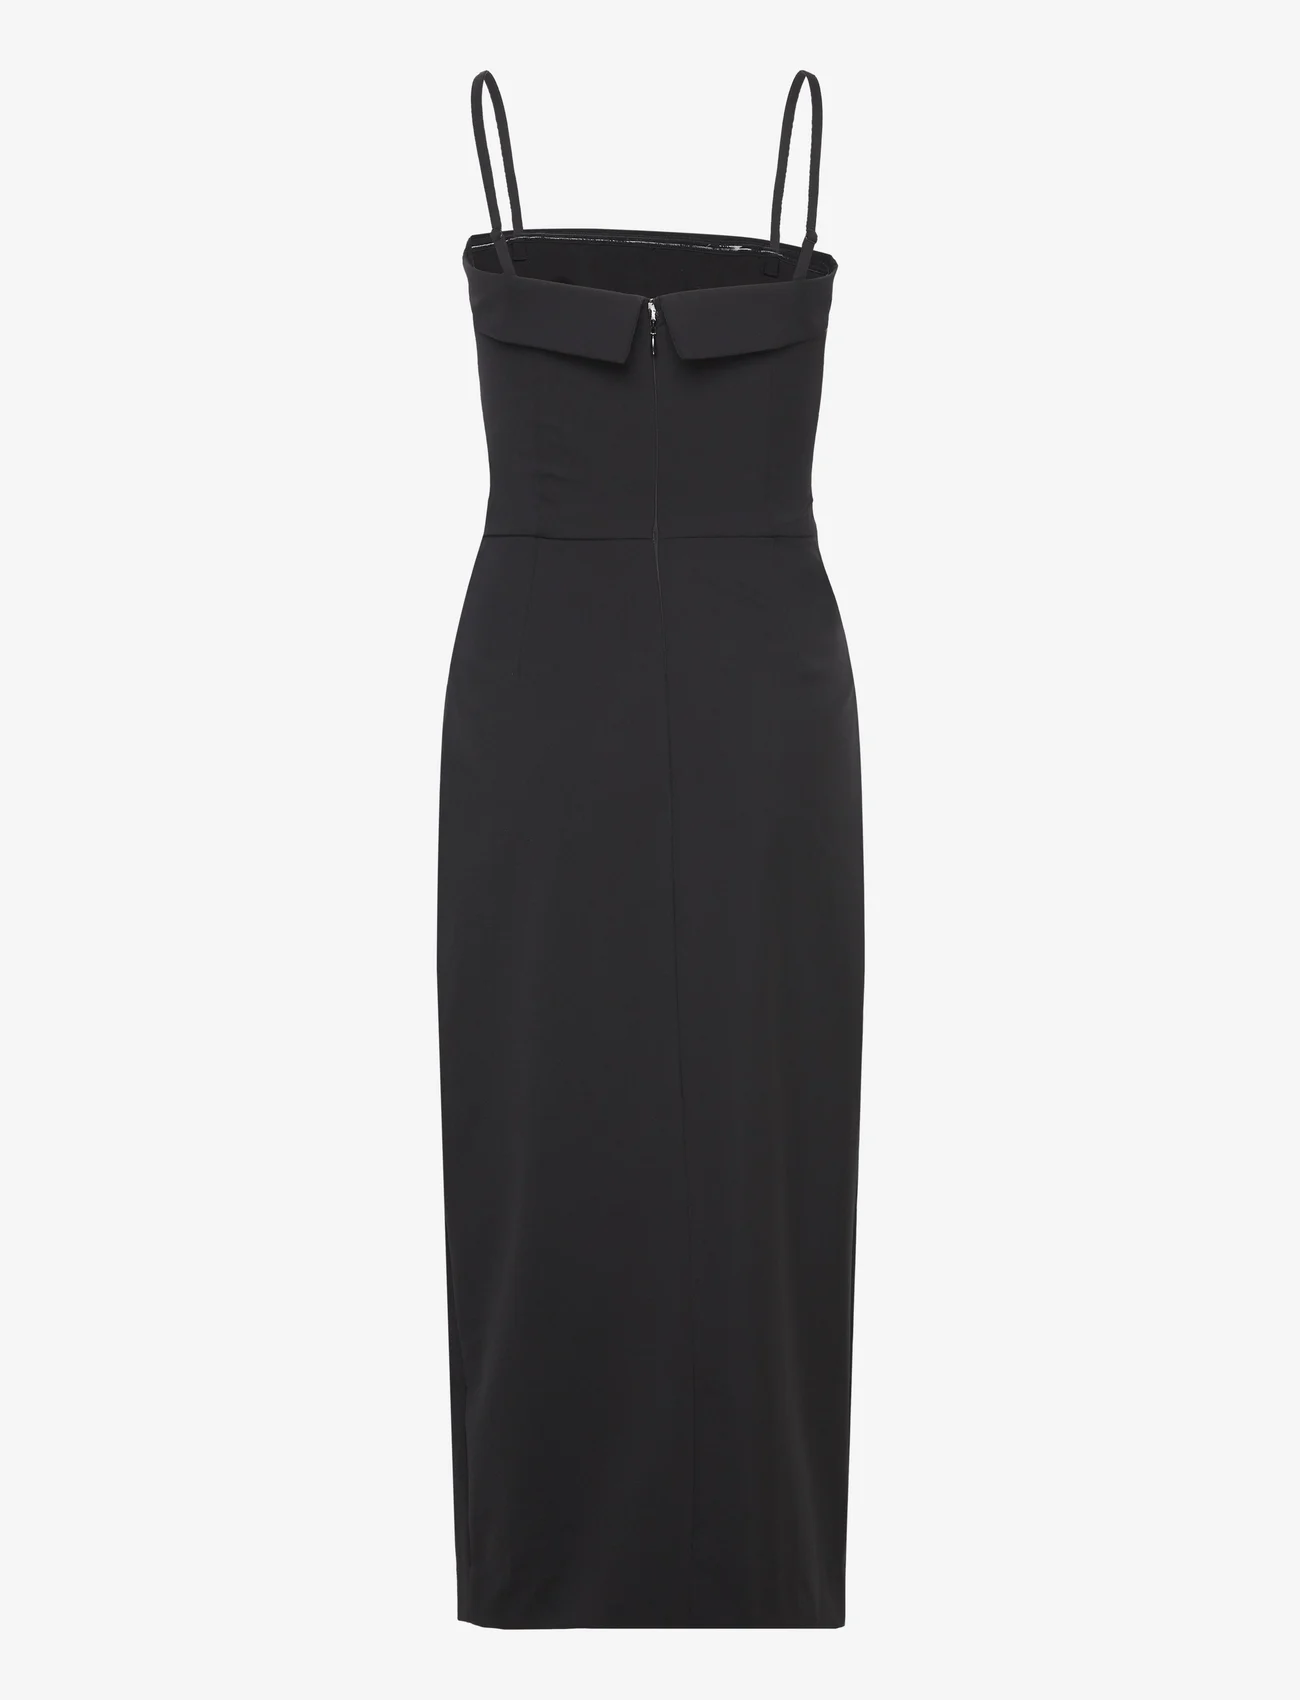 HOLZWEILER - Shelly Dress - festtøj til outletpriser - black - 1